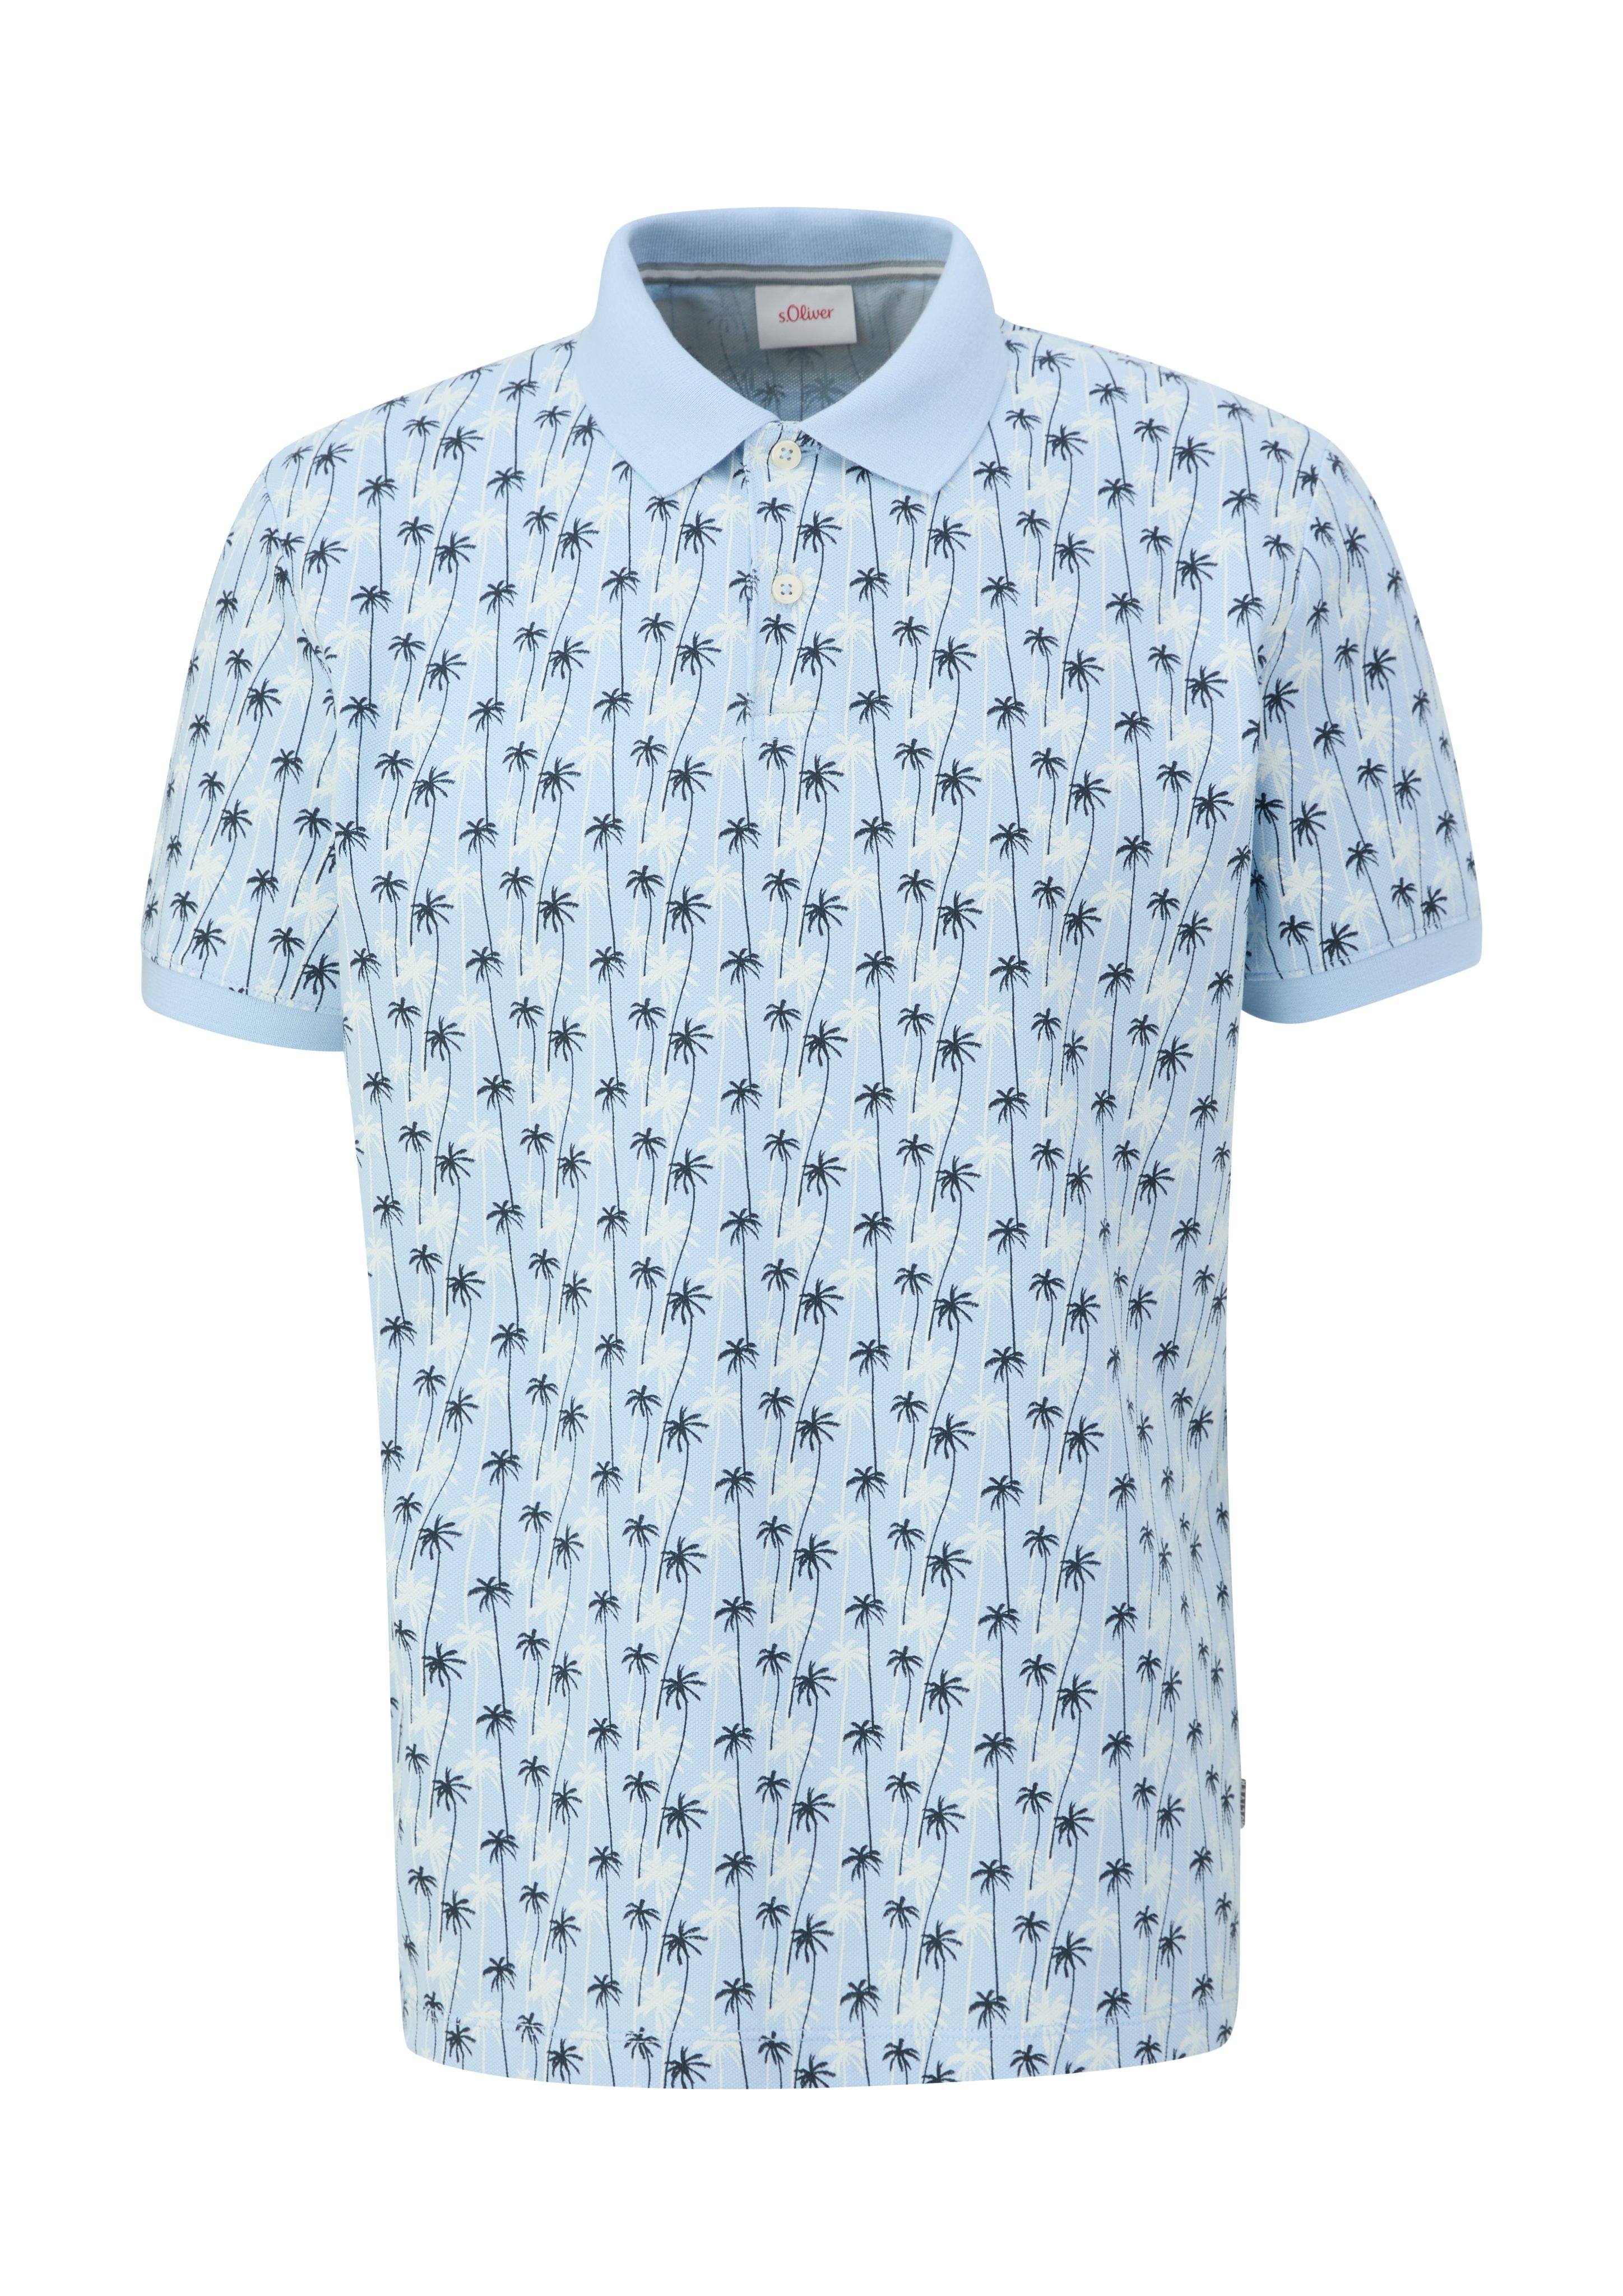 hellblau Kurzarmshirt aus Baumwolle s.Oliver reiner Poloshirt